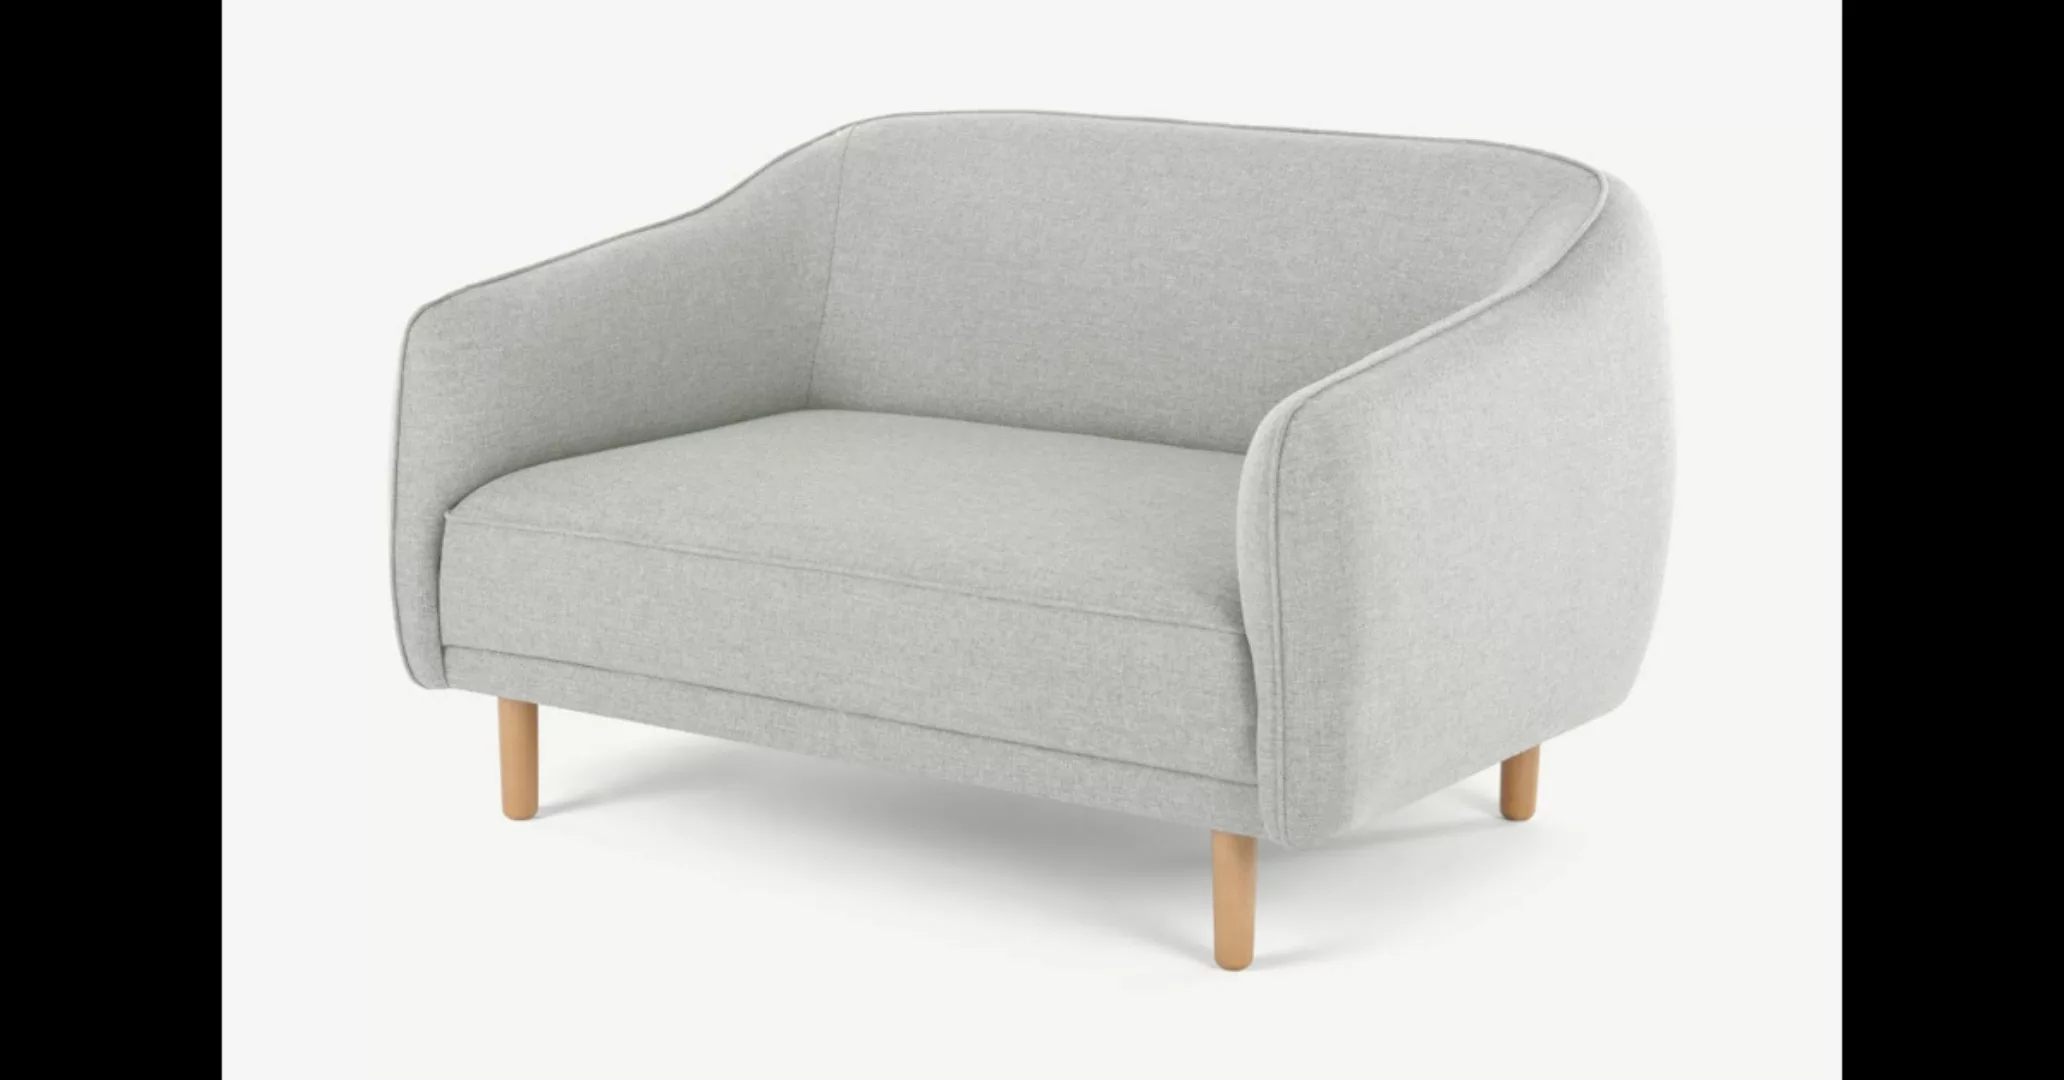 Haring 2-Sitzer Sofa, Silbergrau - MADE.com günstig online kaufen